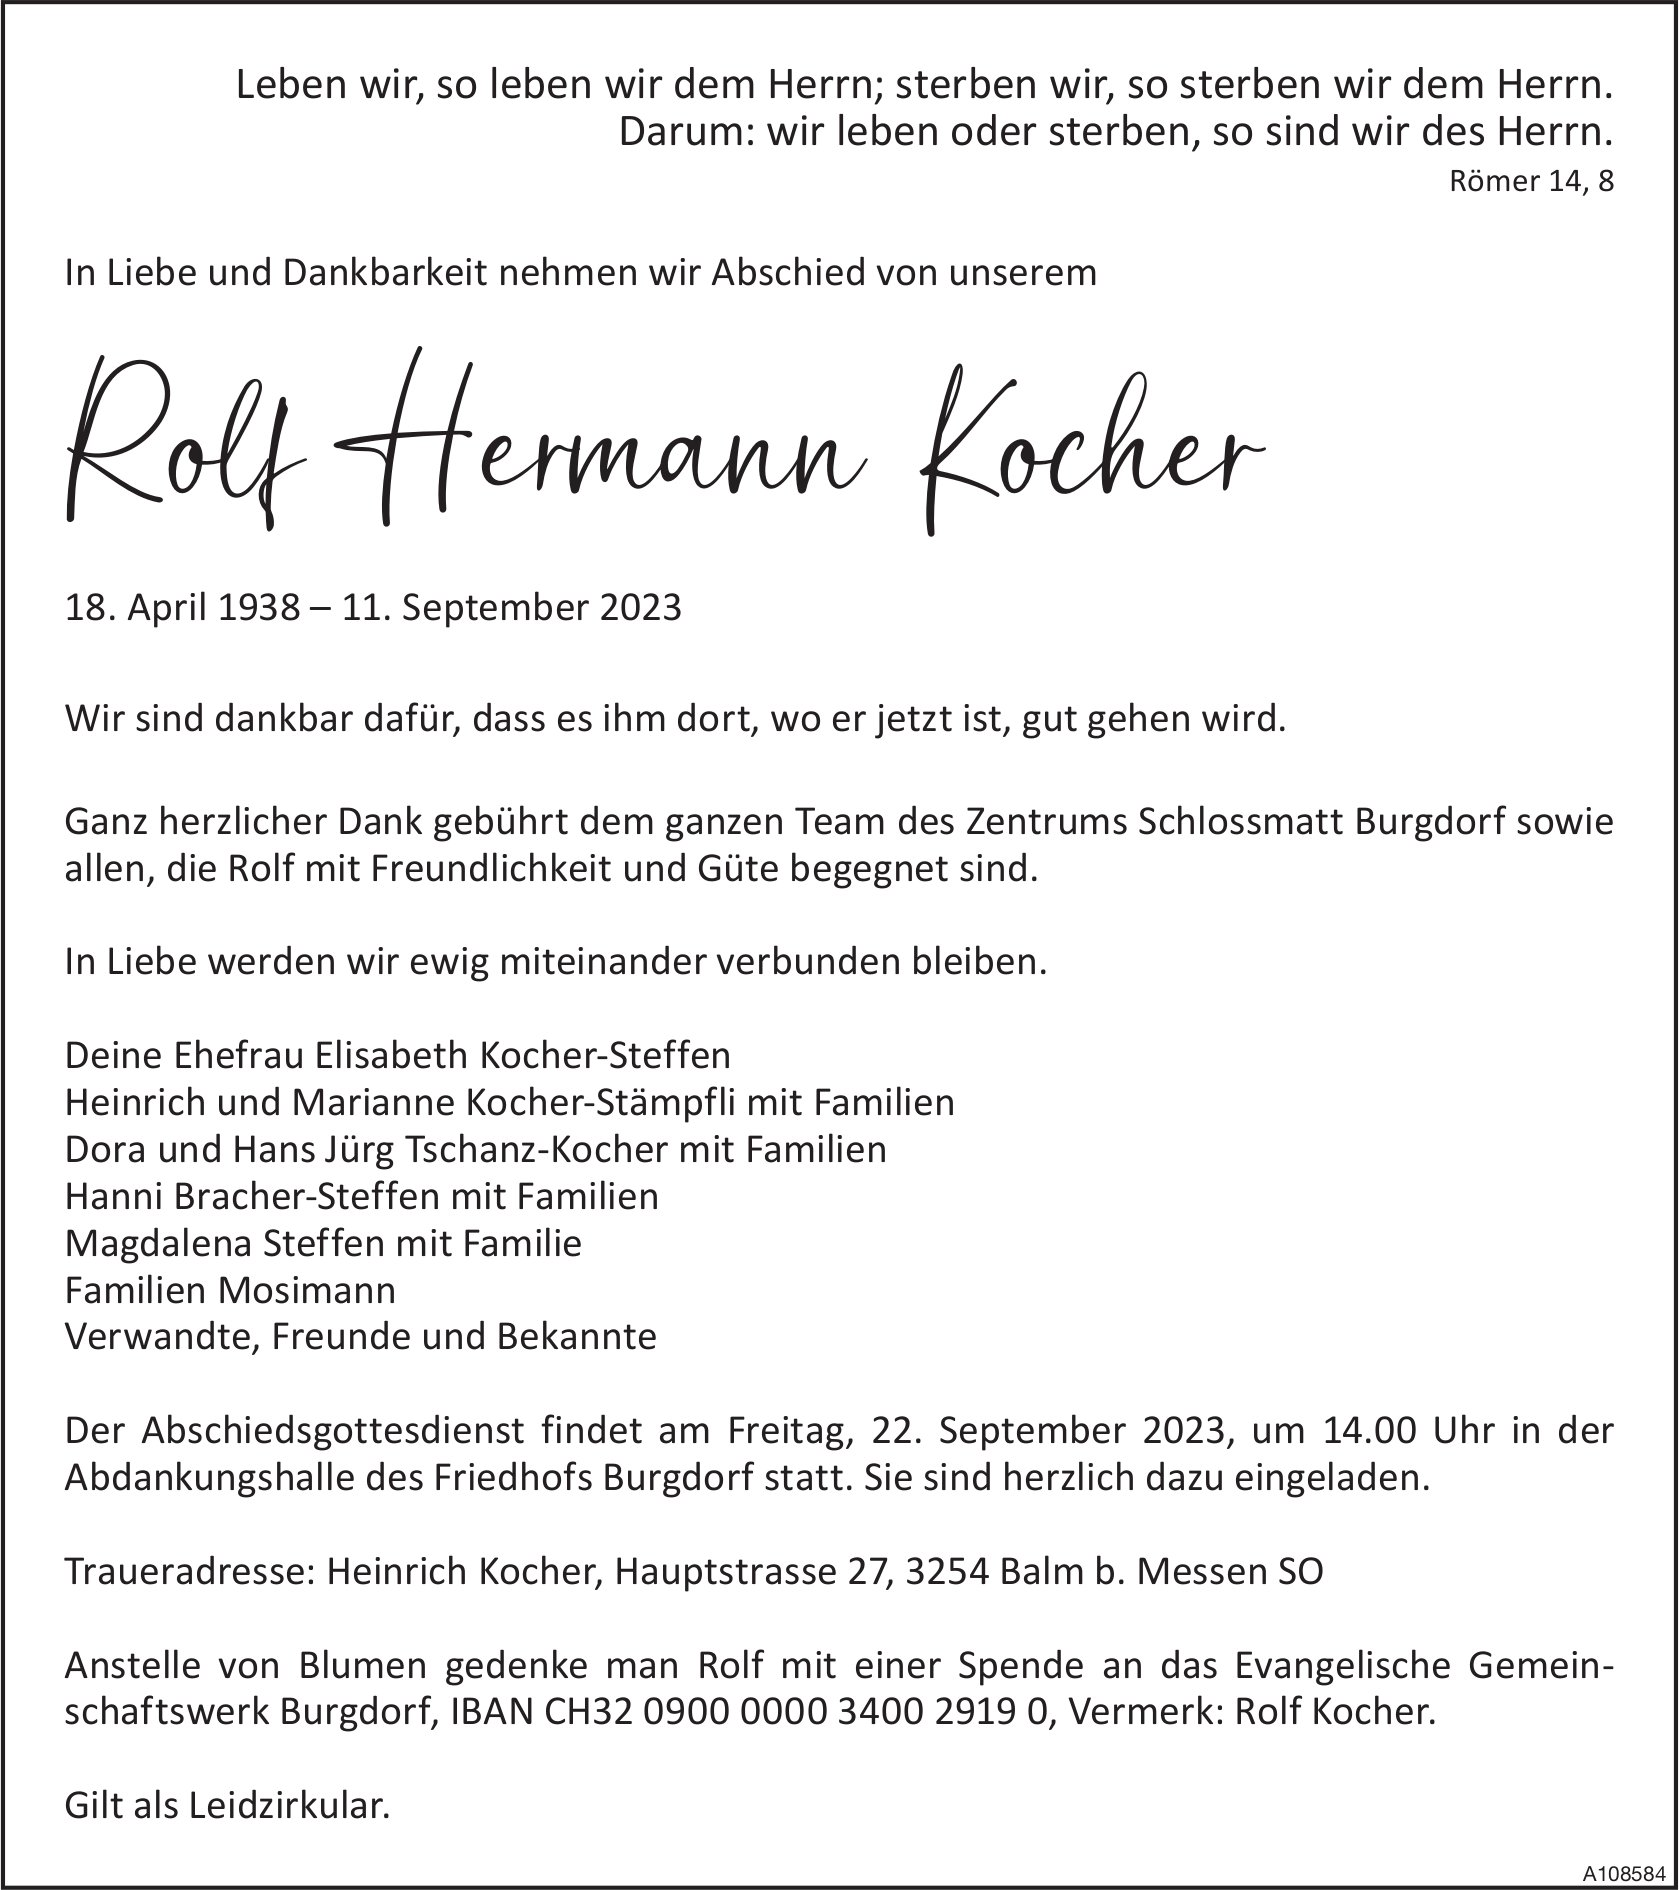 Rolf Hermann Kocher, September 2023 / TA